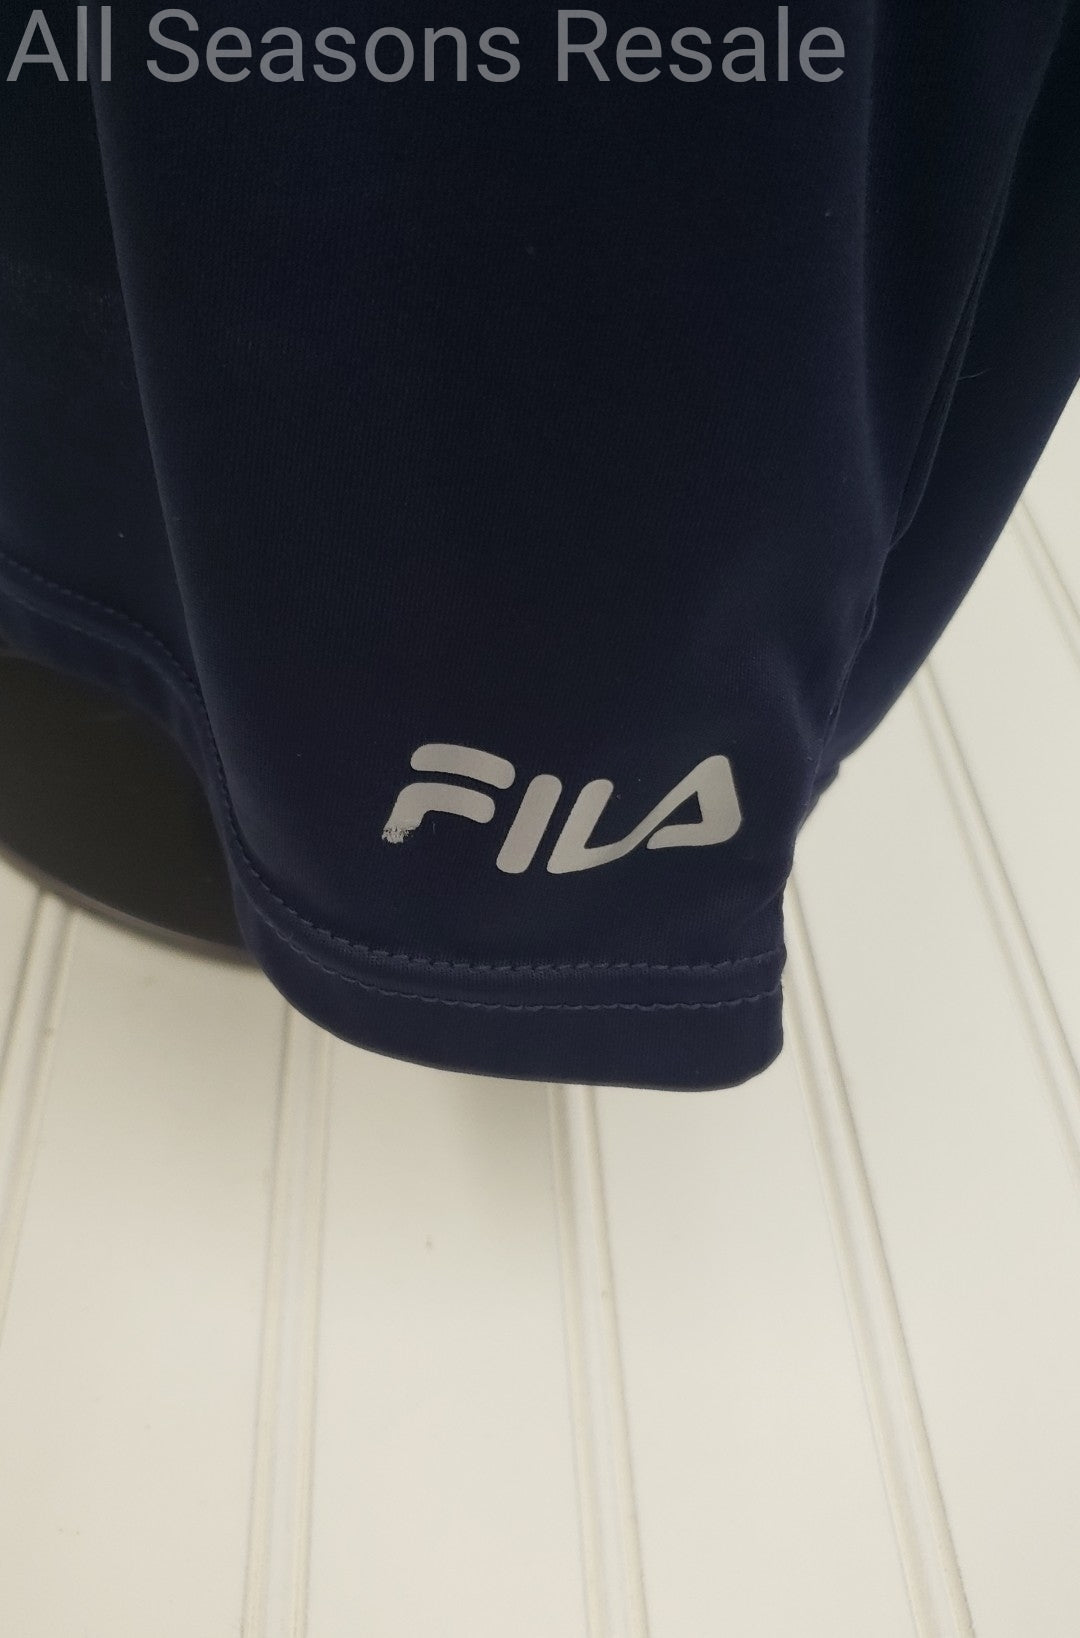 Men's Fila Activewear T Shirt Top Blus Size S 2D – All Seasons Resale